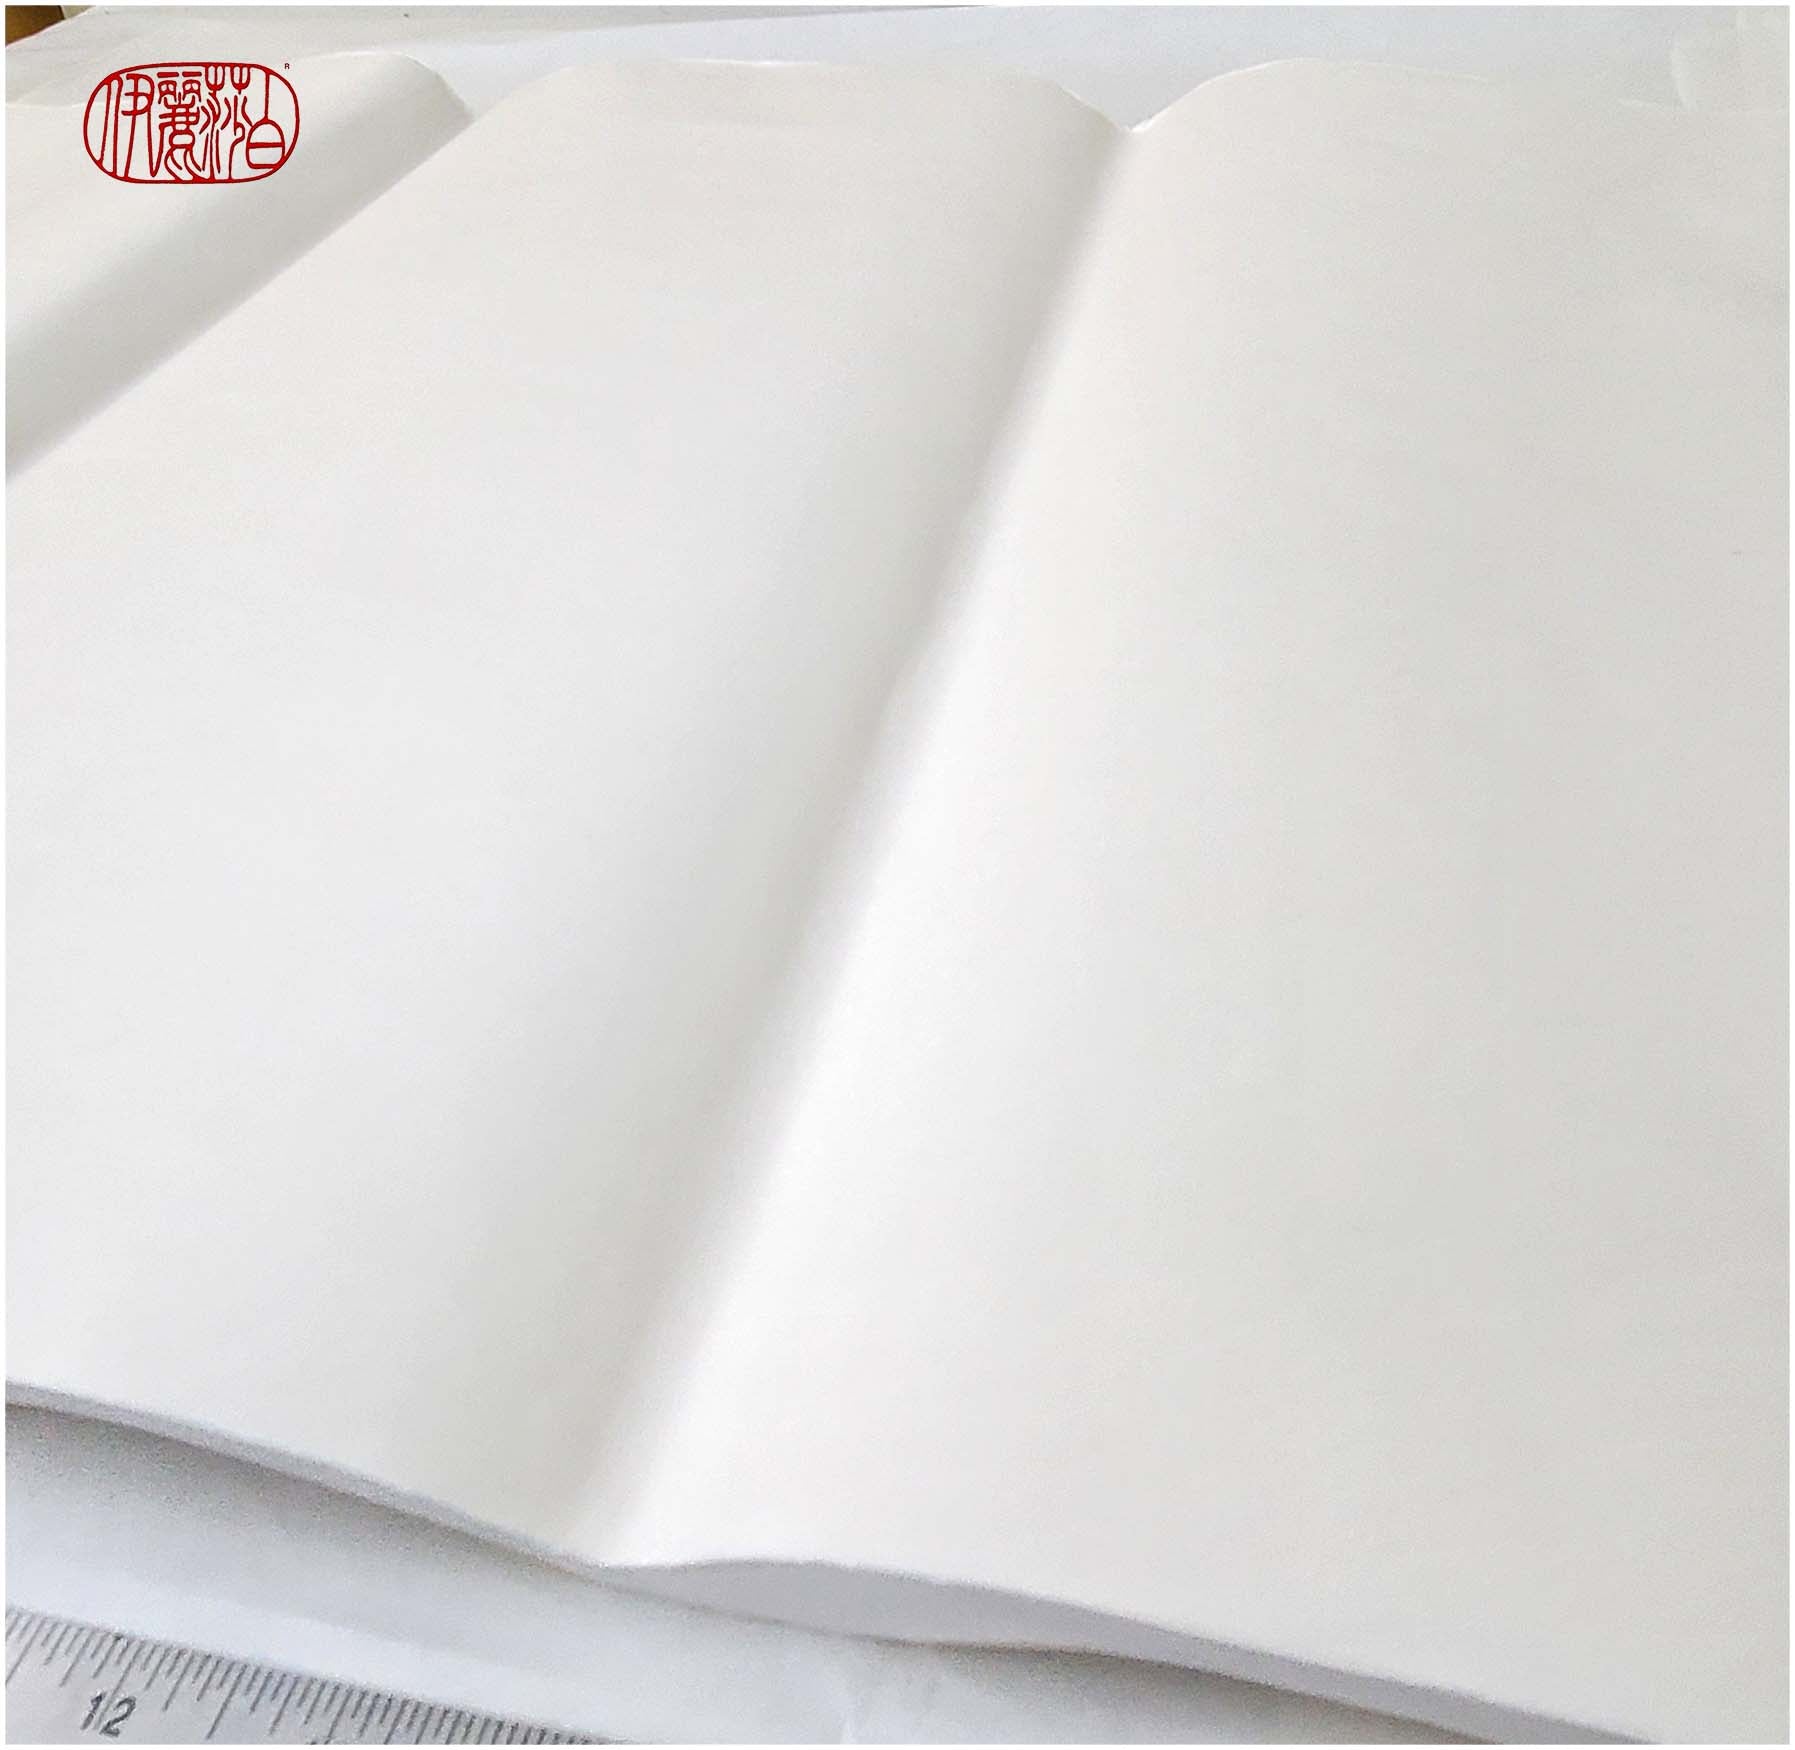 What is Shuen or Xuan Paper?